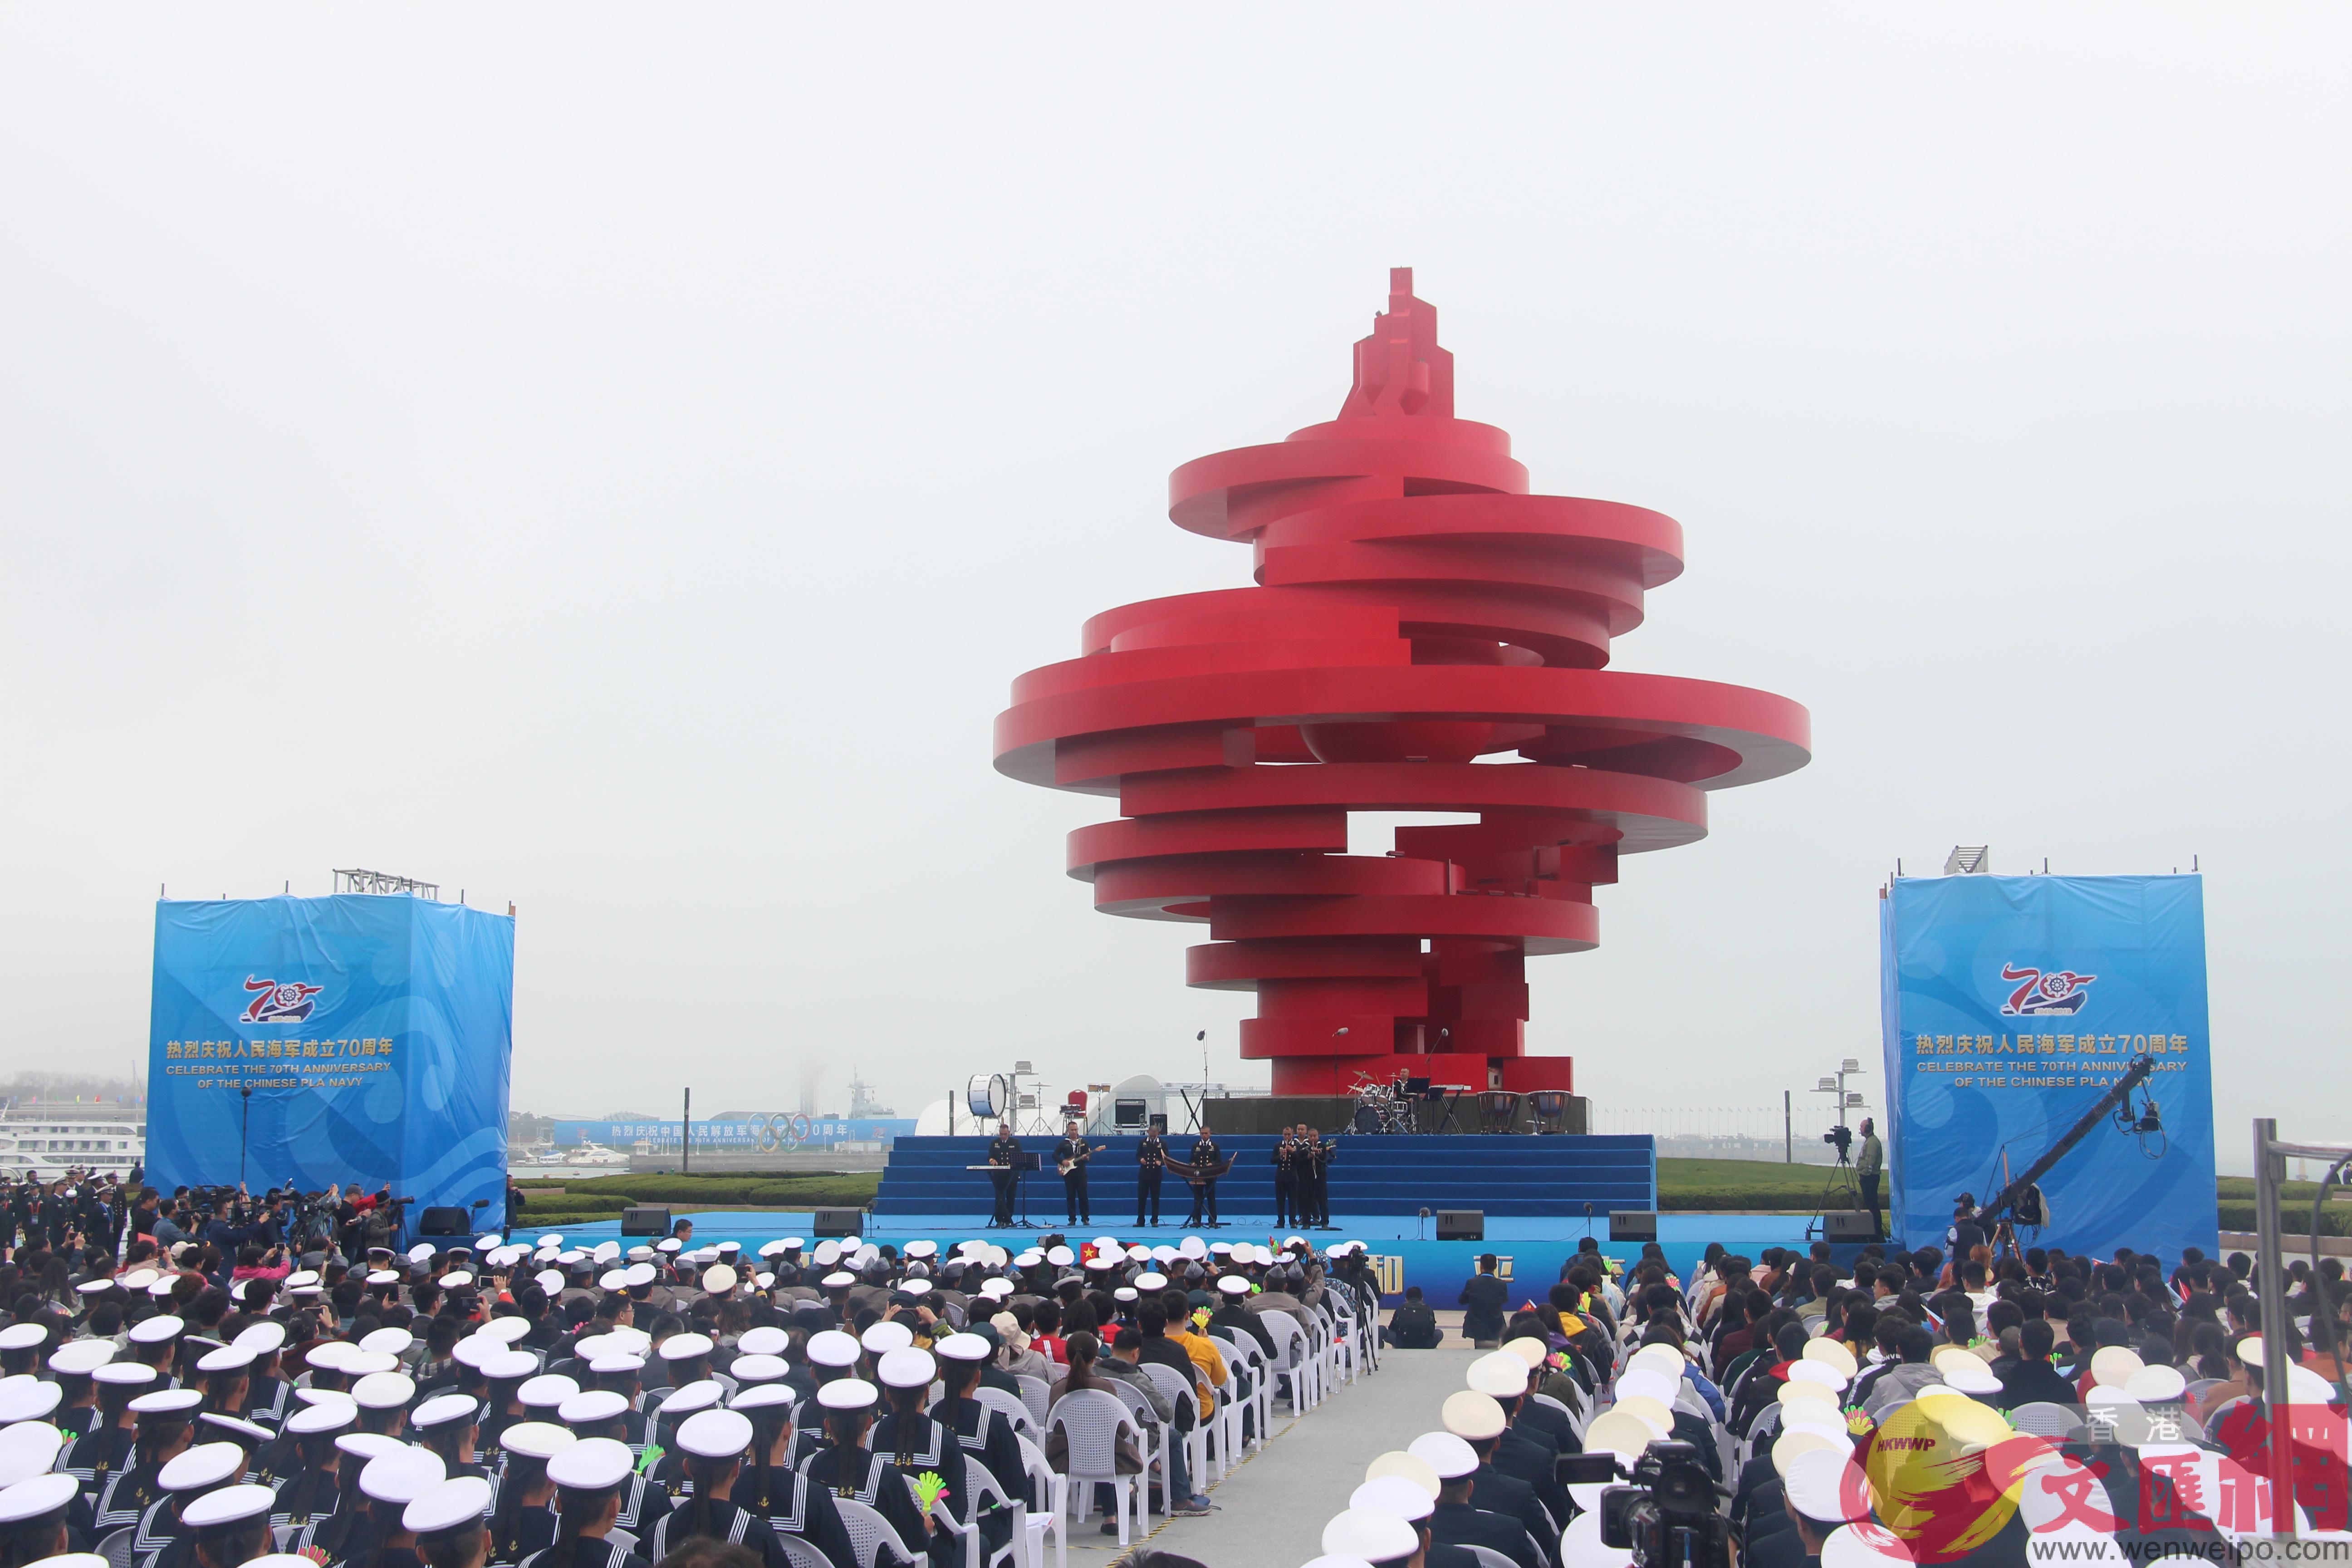 中外艦艇官兵B青島市民在青島著名雕塑u五月的風v前觀看演出]全媒體記者胡臥龍B劉洋攝^